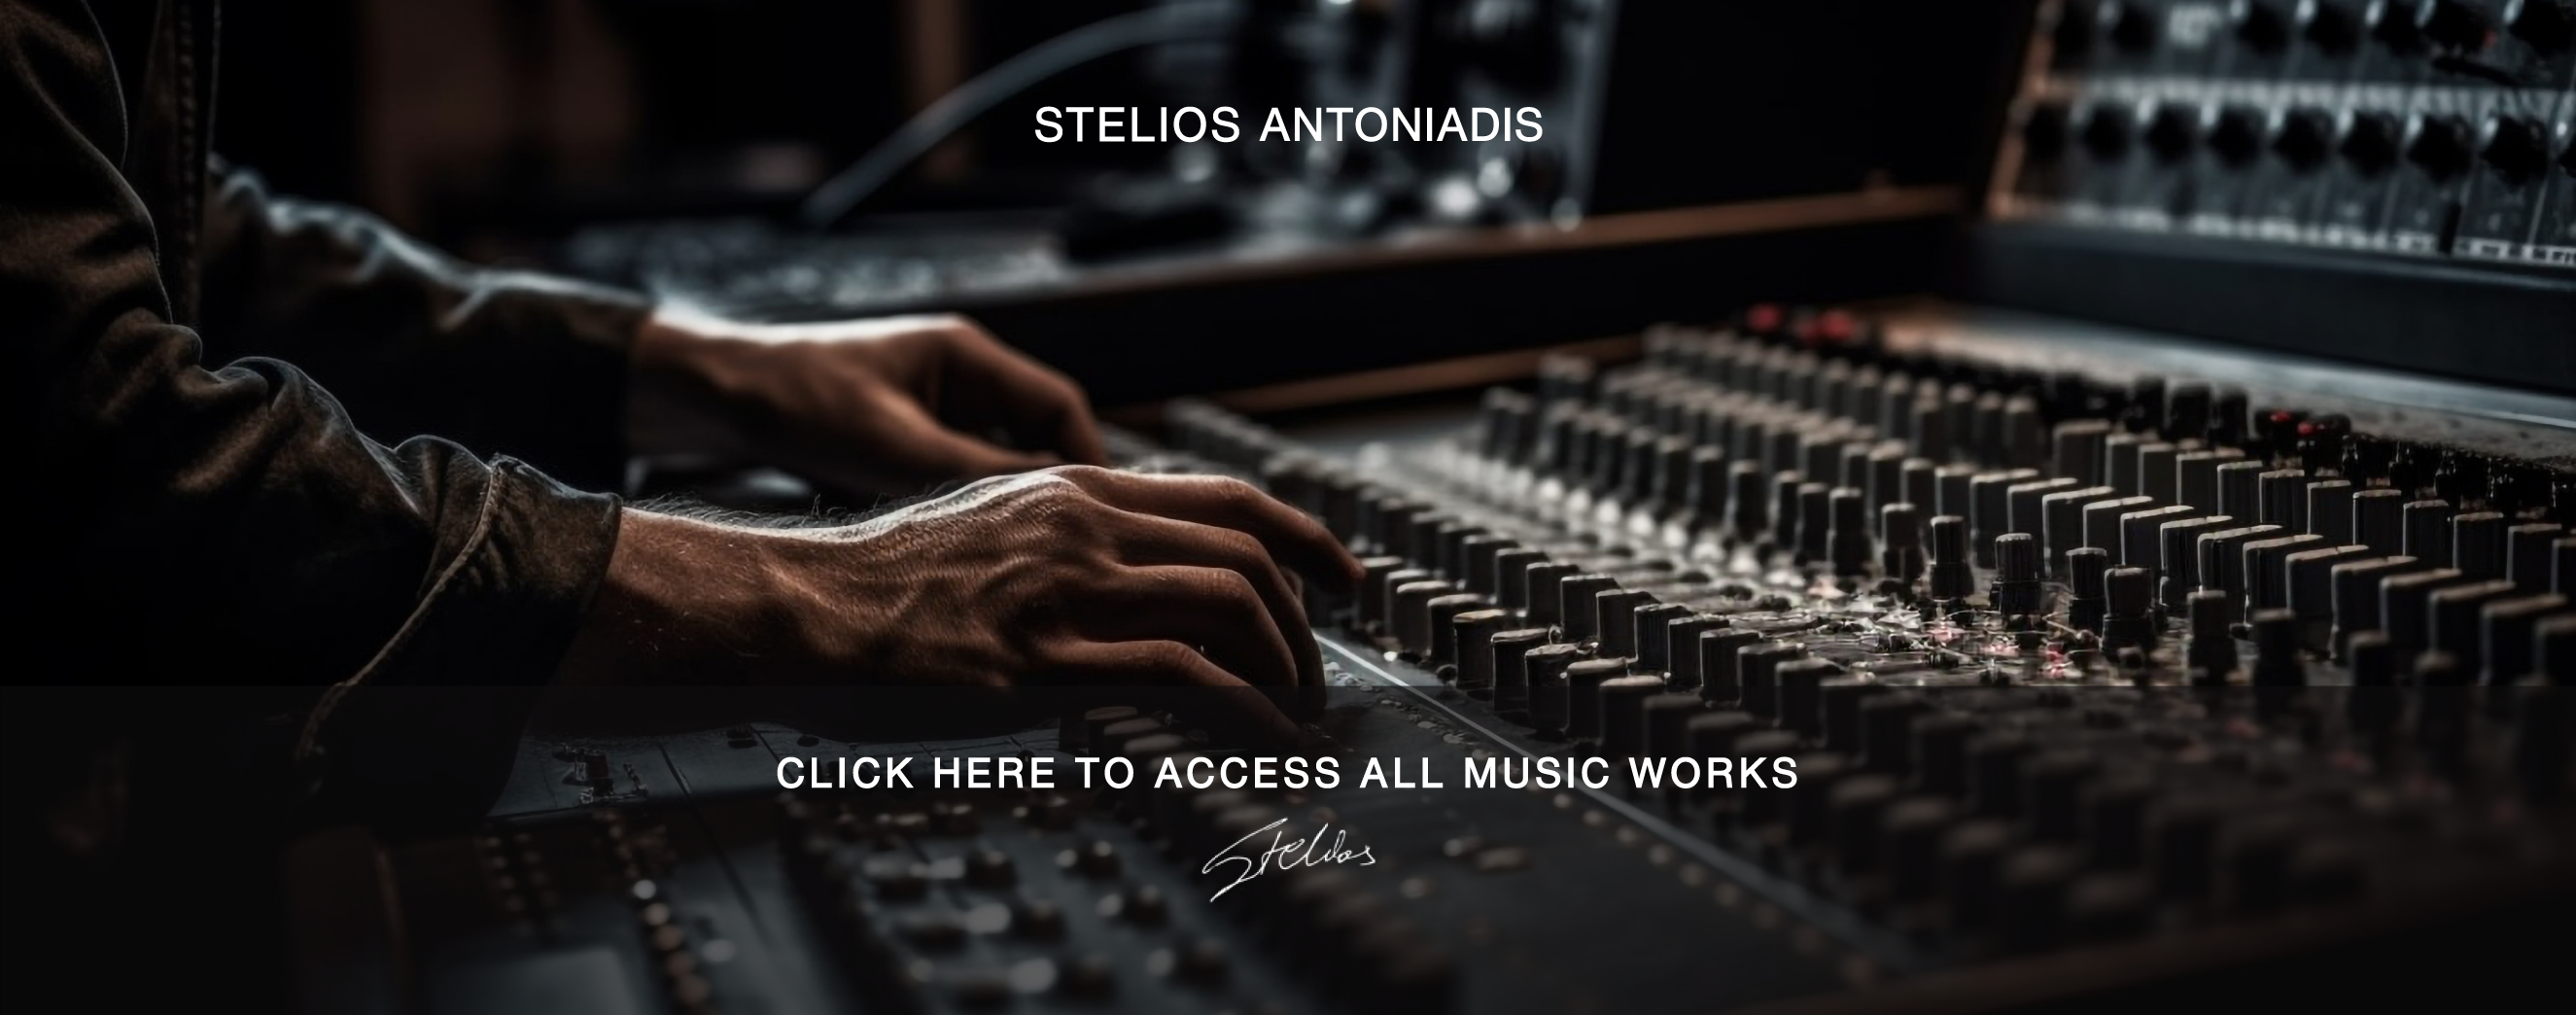 Stelios Antoniadis Music Works